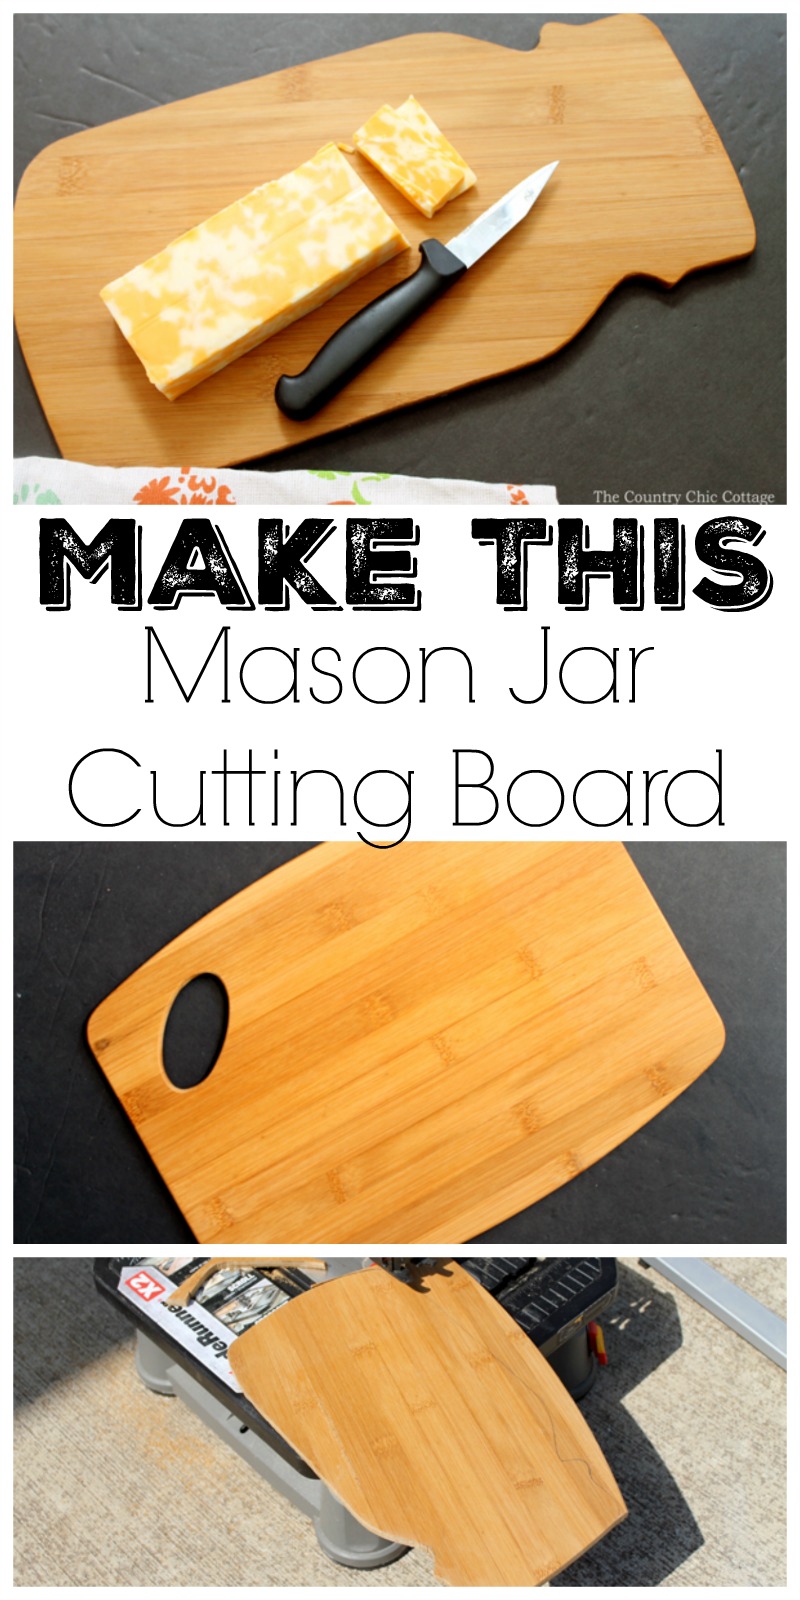 Mason Jar Cutting Board pin image